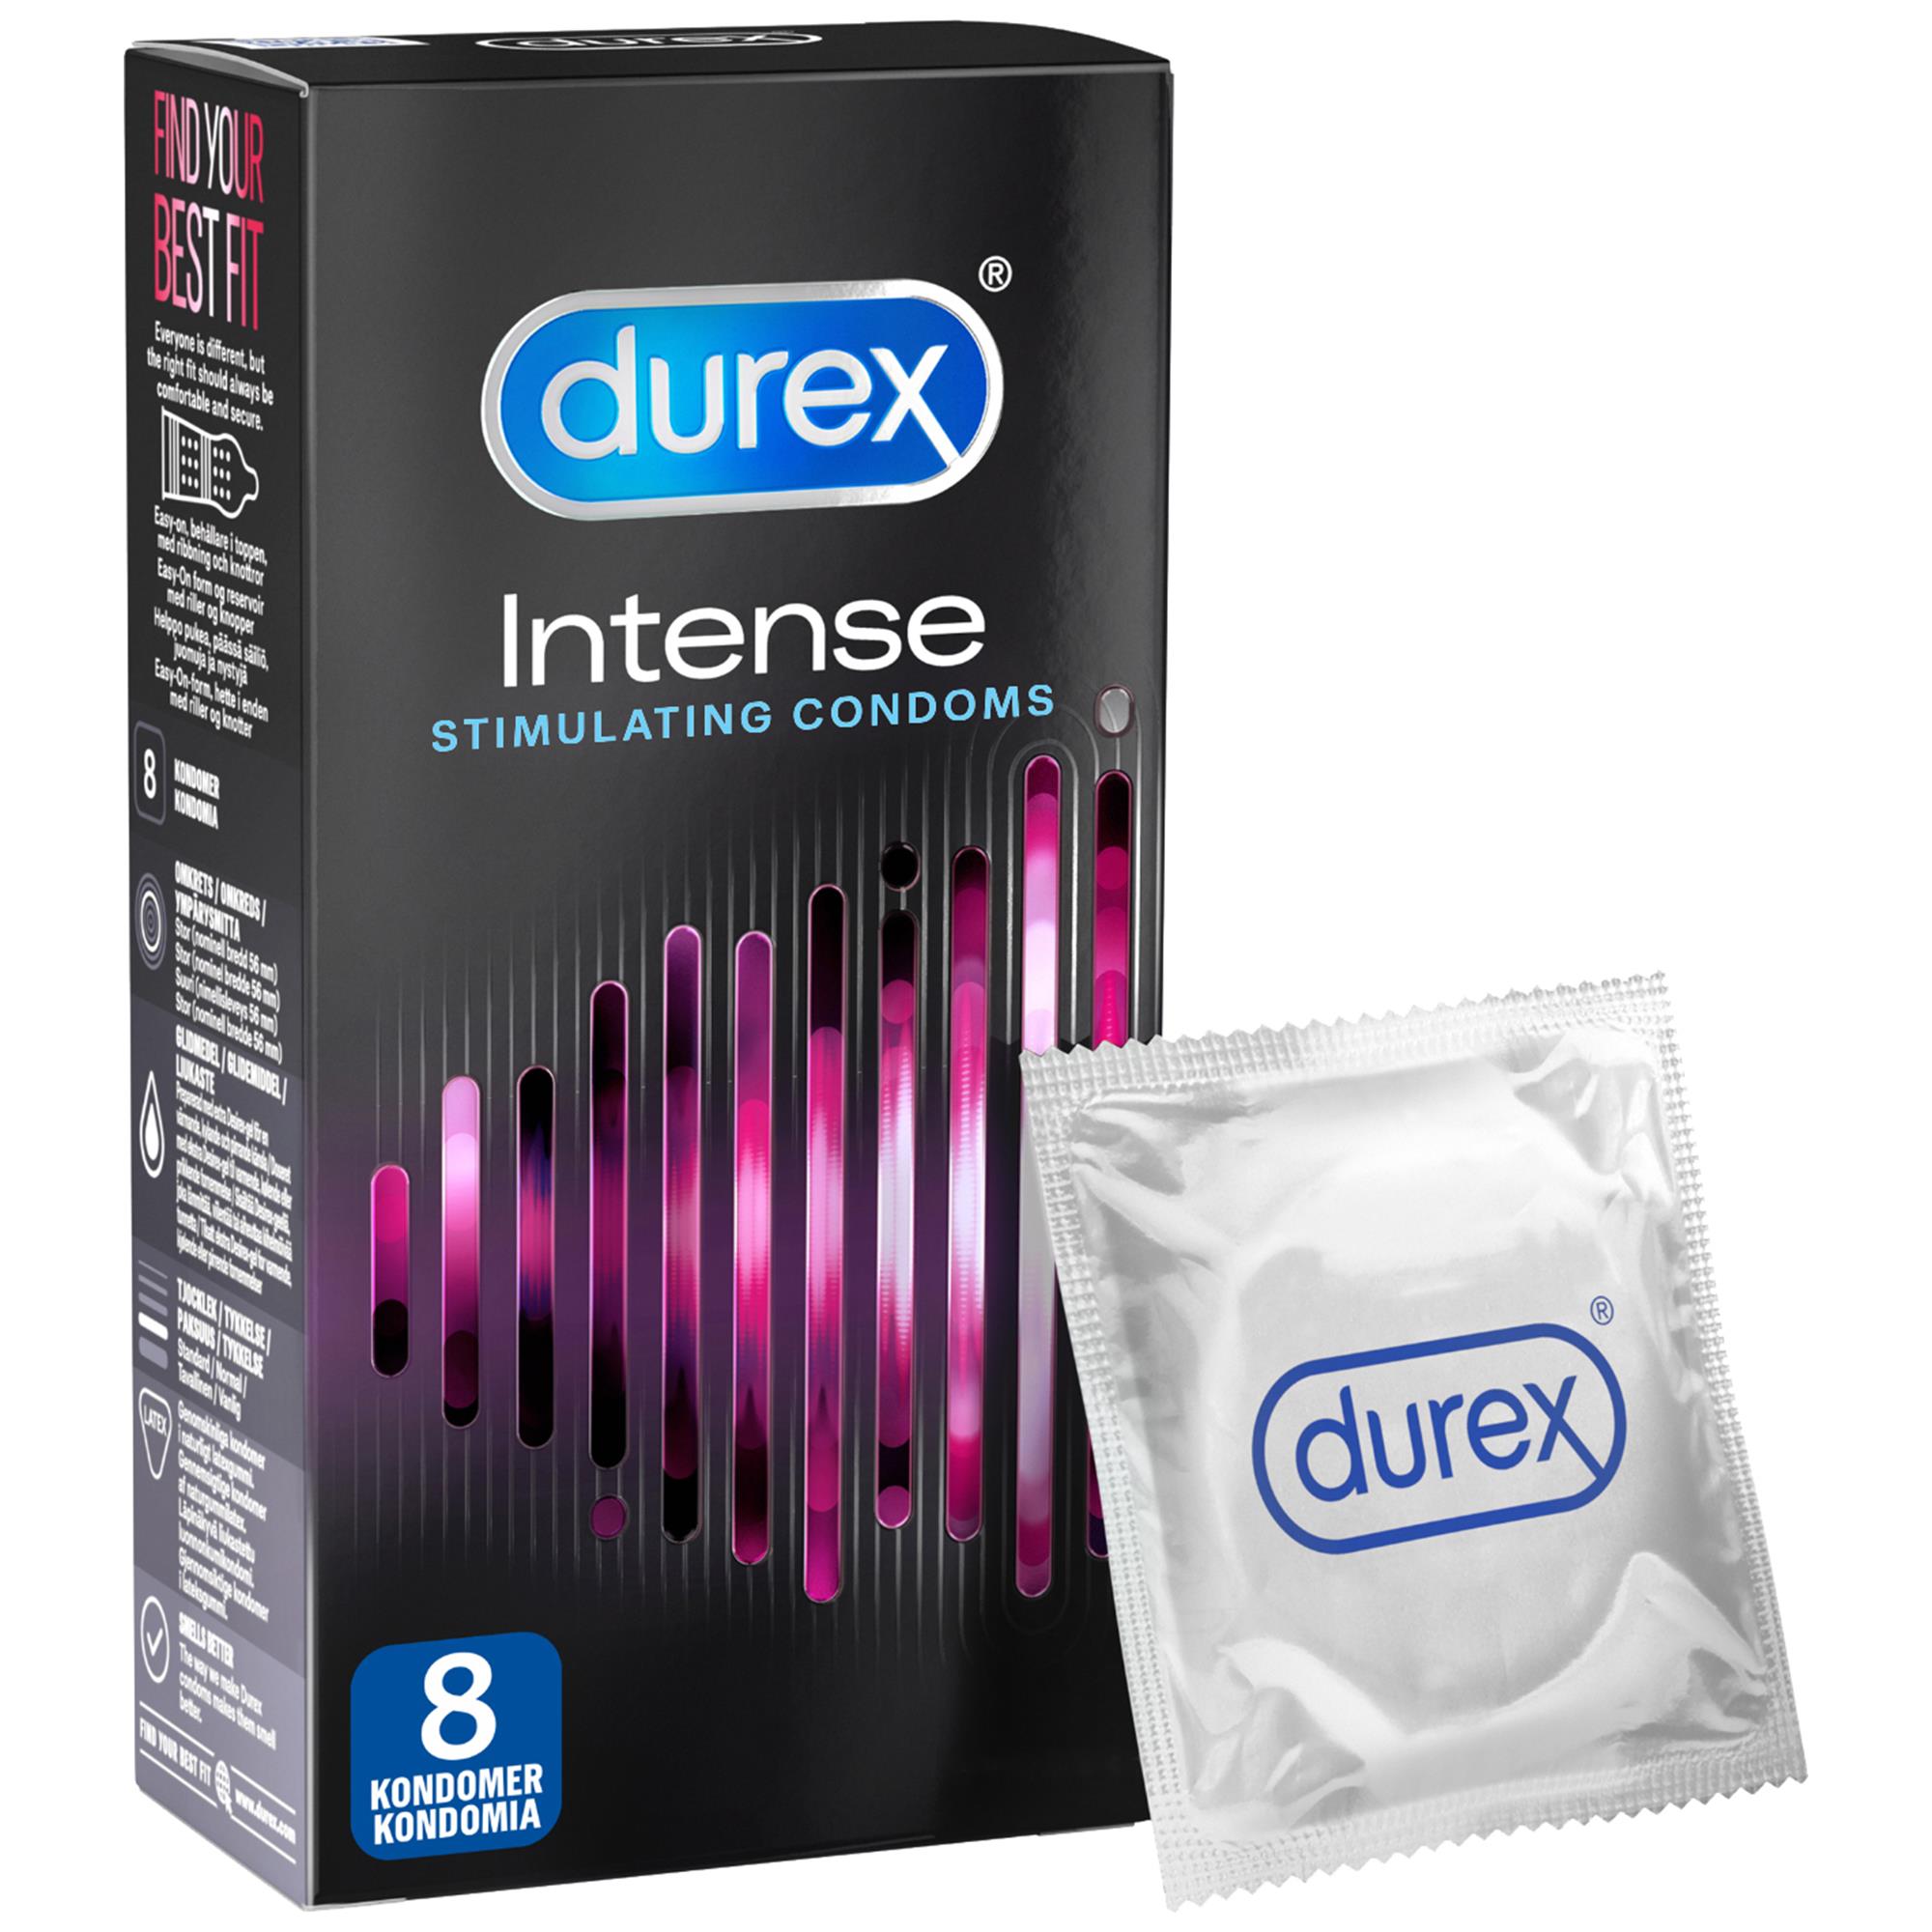 Brug Durex Intense Kondom 8 st til en forbedret oplevelse